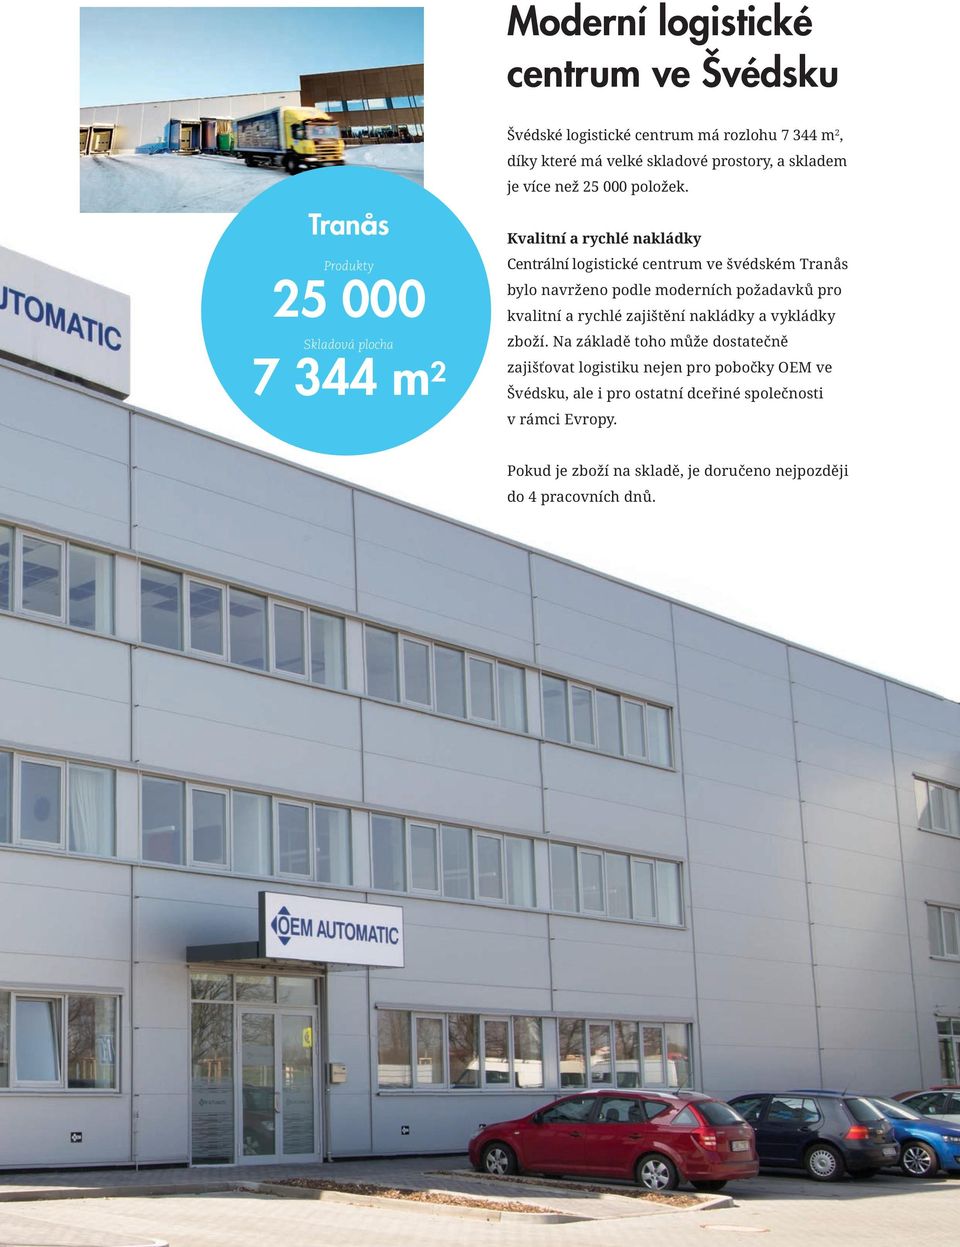 Kvalitní a rychlé nakládky Centrální logistické centrum ve švédském Tranås bylo navrženo podle moderních požadavků pro kvalitní a rychlé zajištění